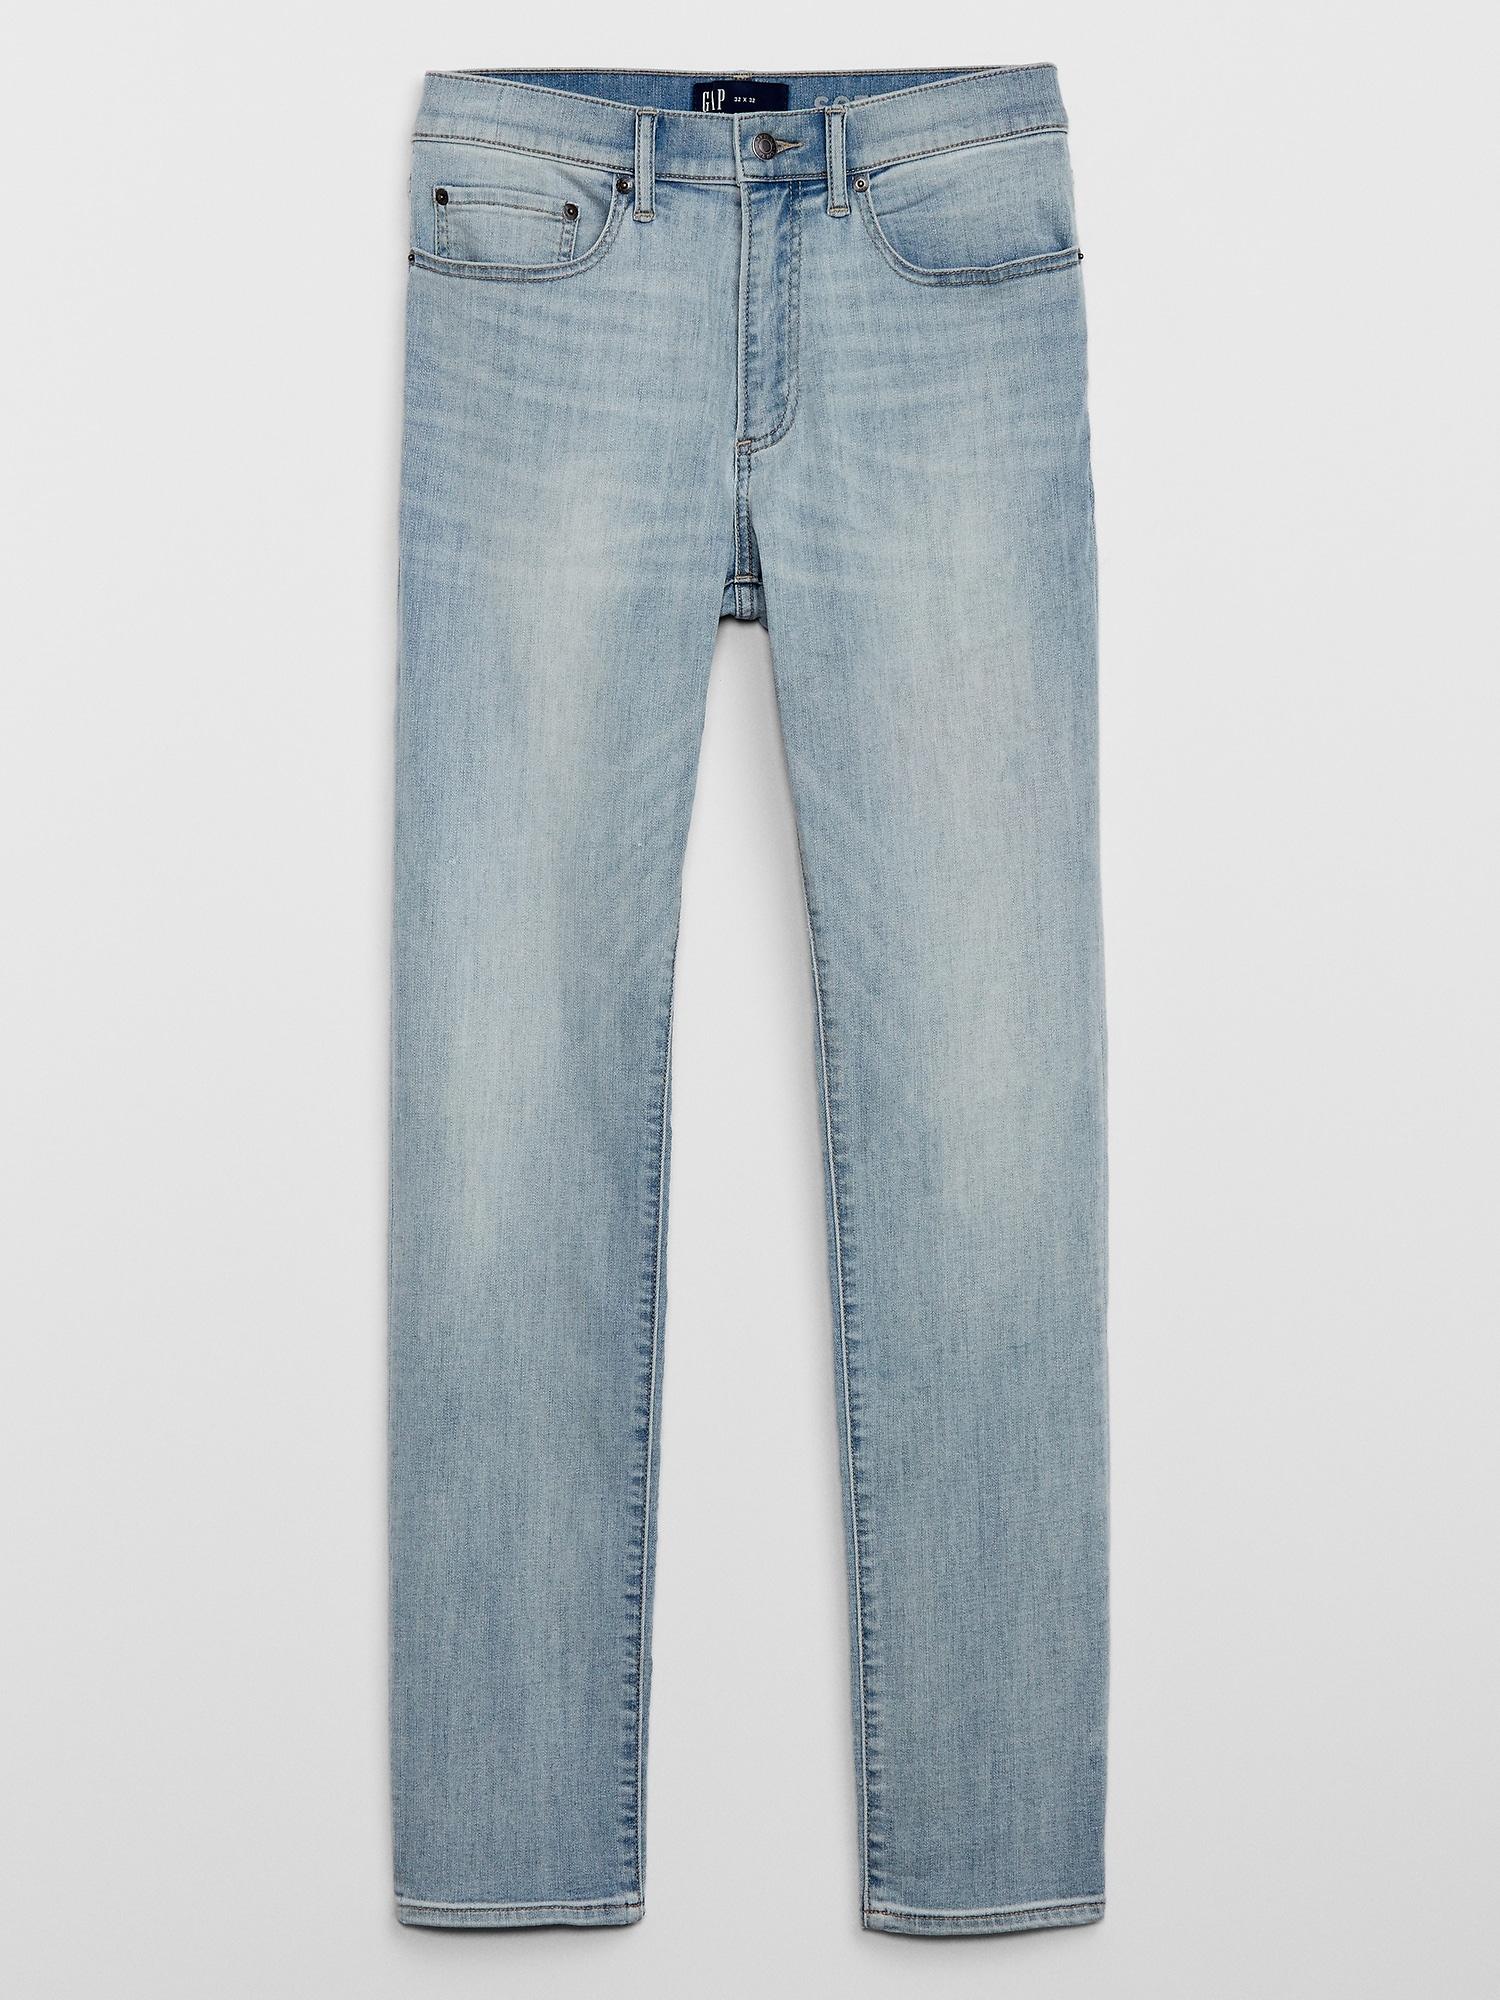 gap factory jeans